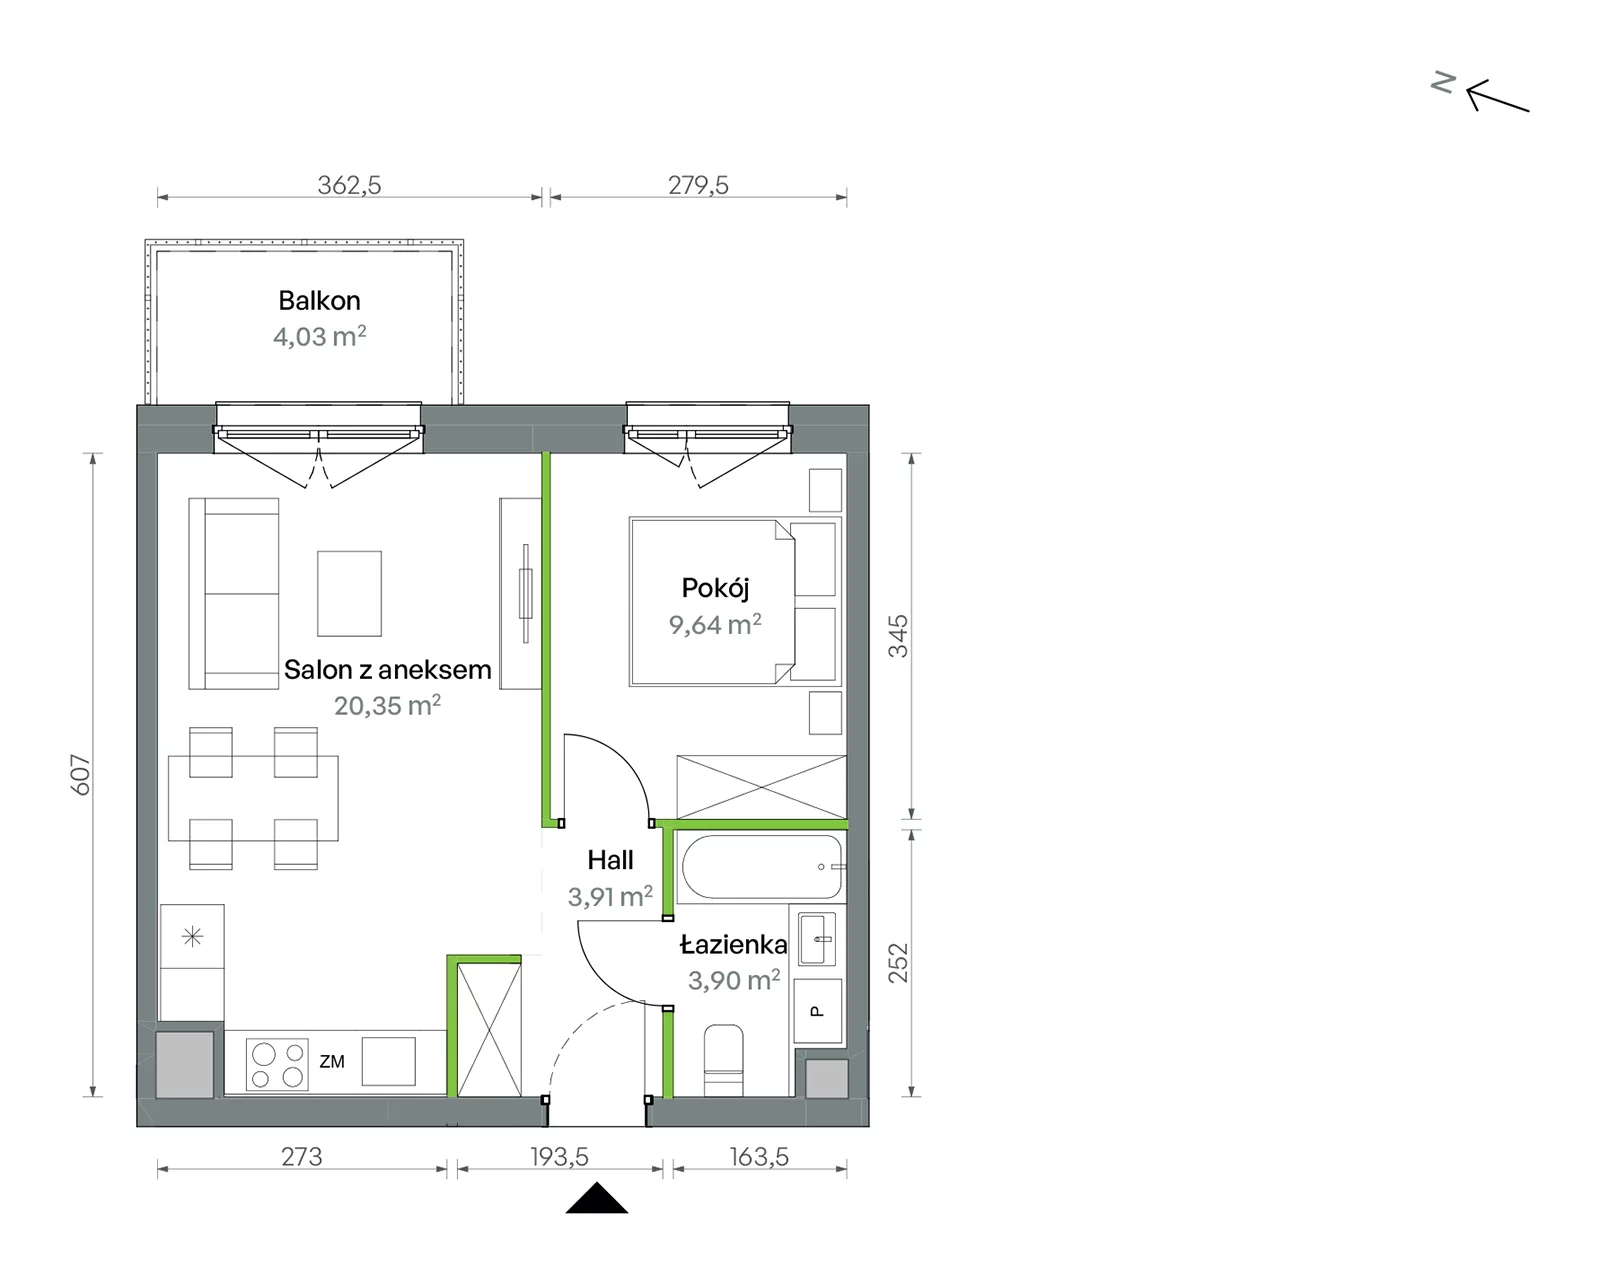 Mieszkanie 37,80 m², piętro 1, oferta nr 1/A/2/38, Oliwska Vita etap II, Warszawa, Targówek, Bródno, ul. Oliwska 11